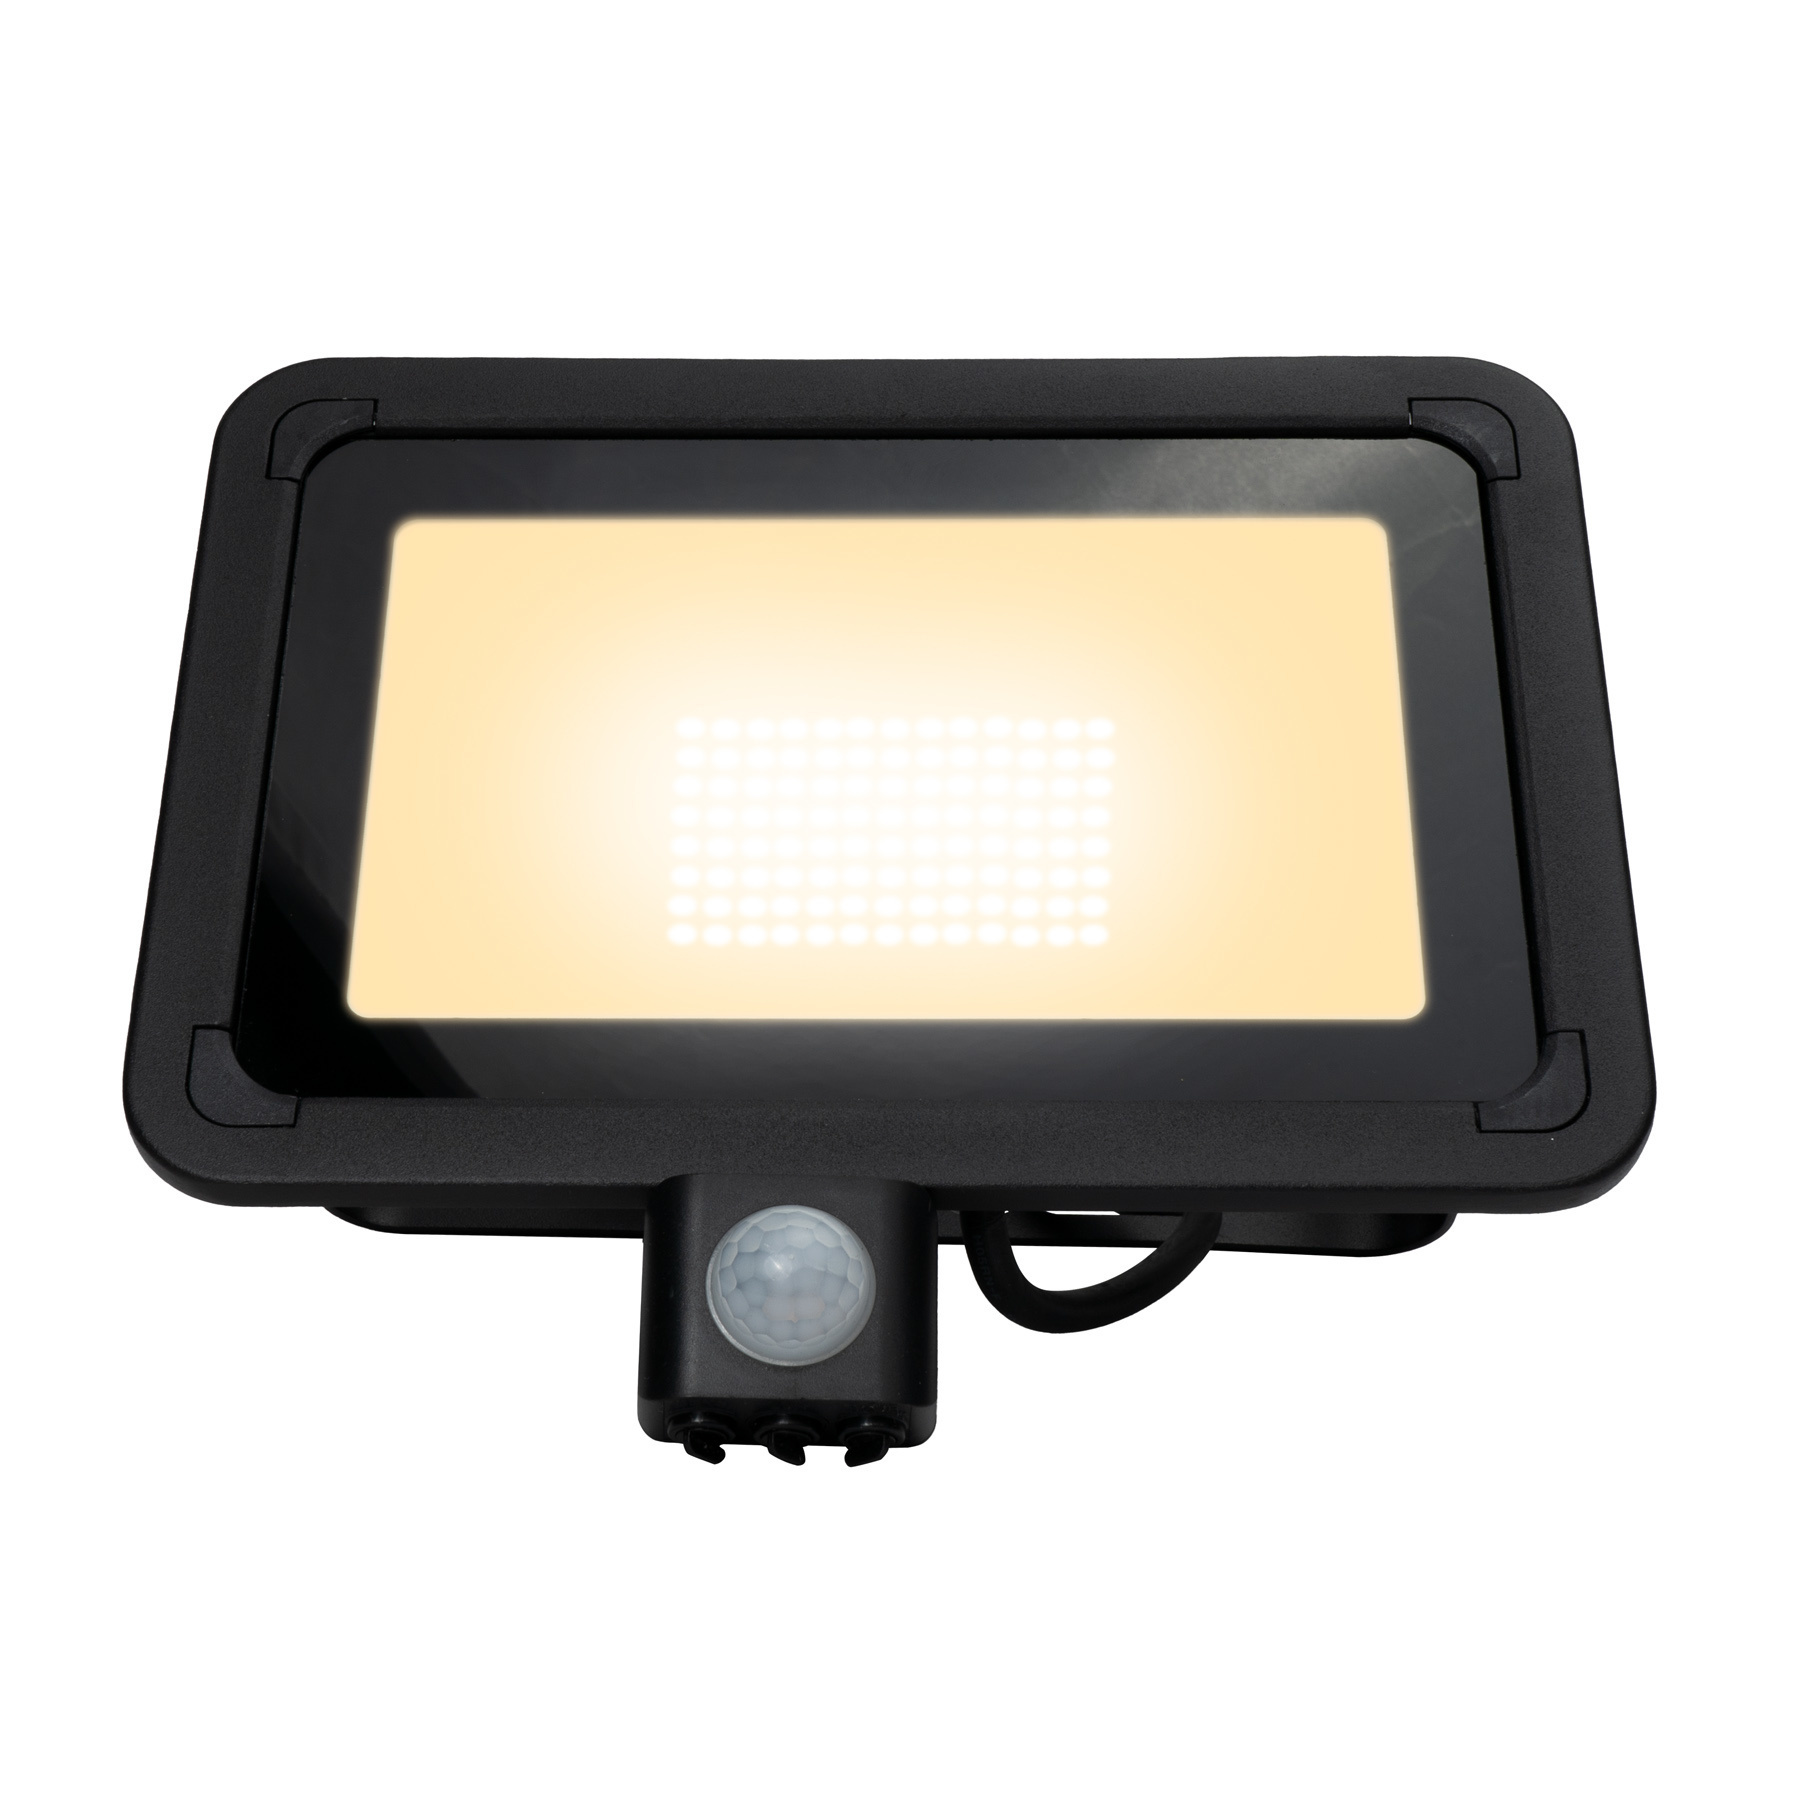 SG - Mini Projecteur LED Extérieur avec Détection Flom 3000k - 630019